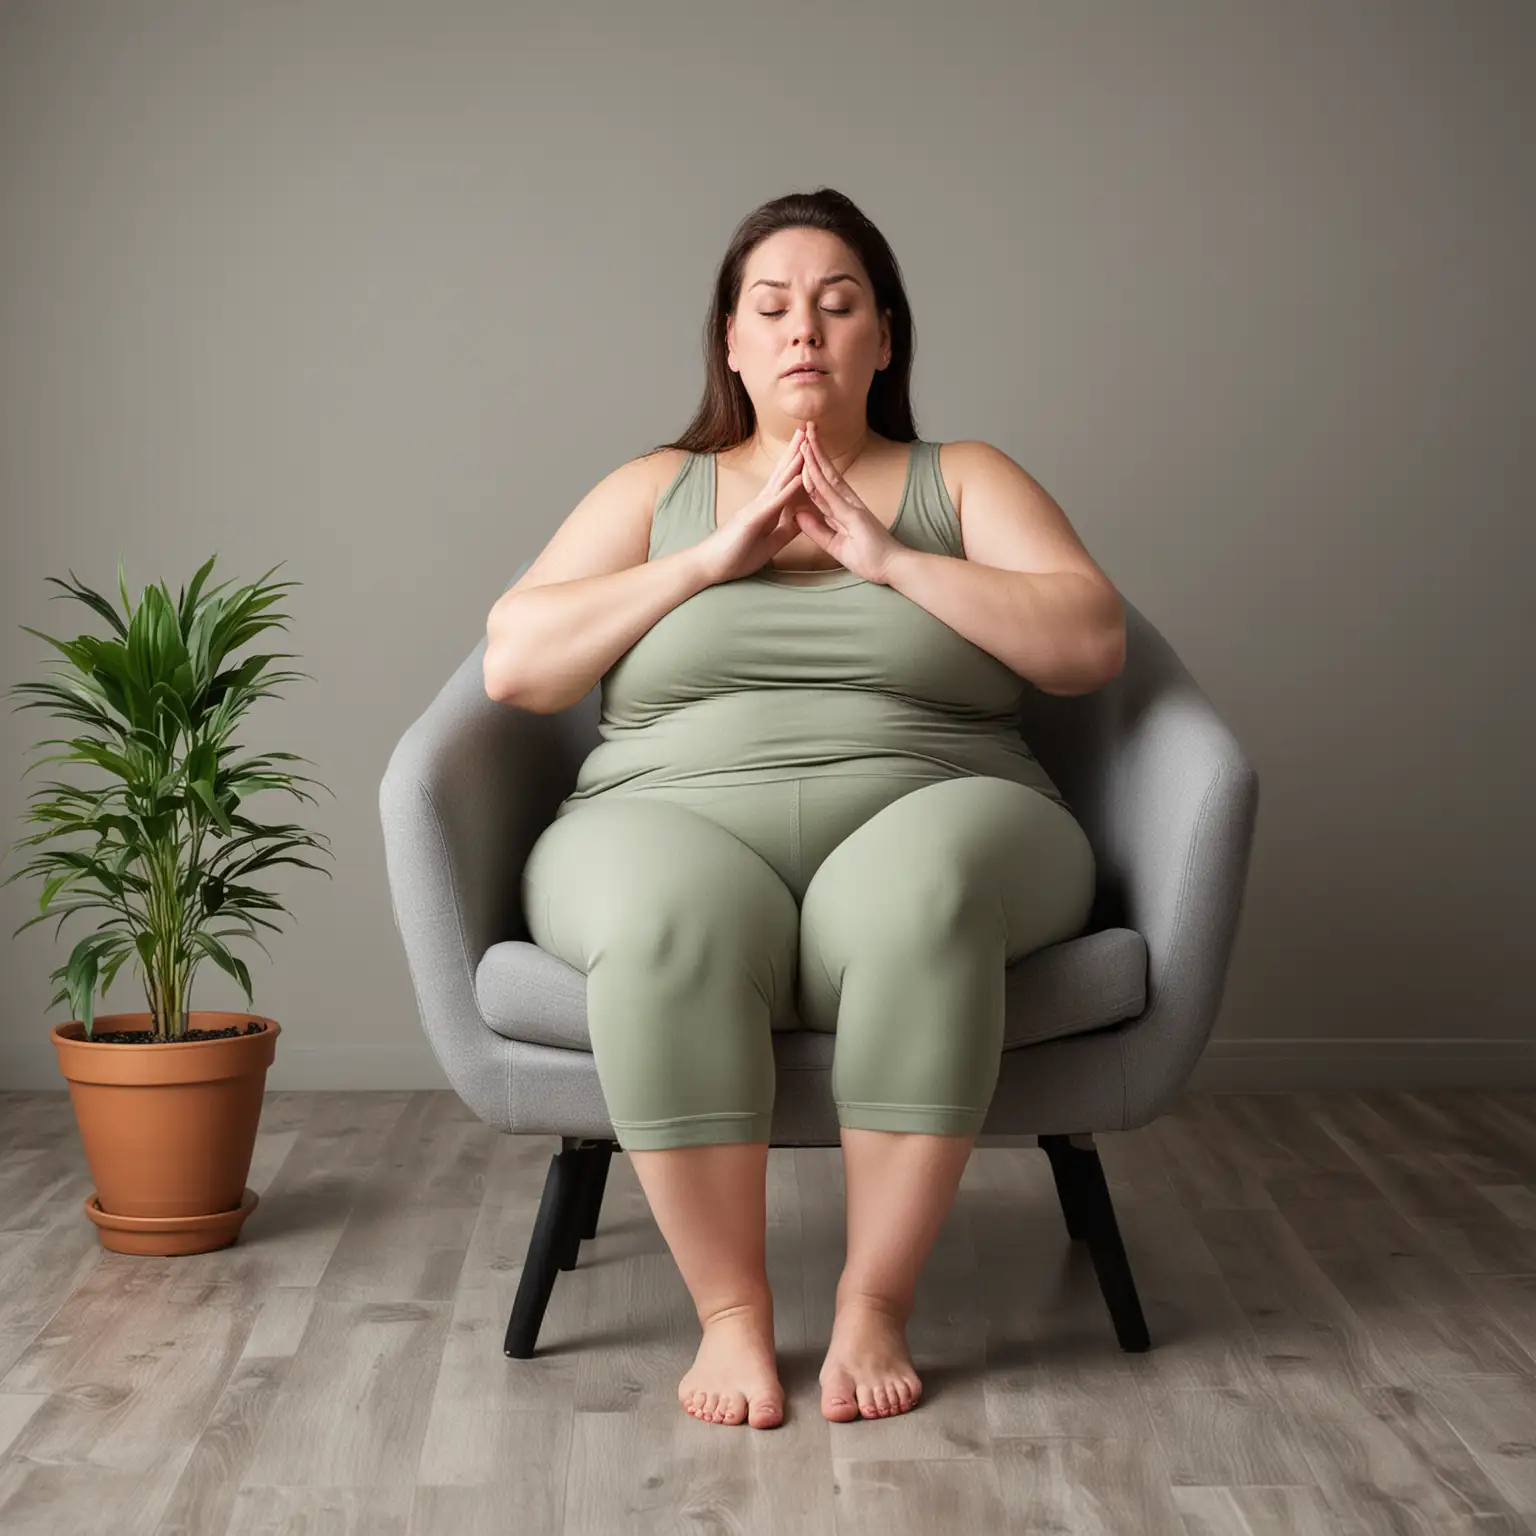 фото креатива : женщина борется с лишним весомона медитирует сидя в кресле  у нее на лице удивление


